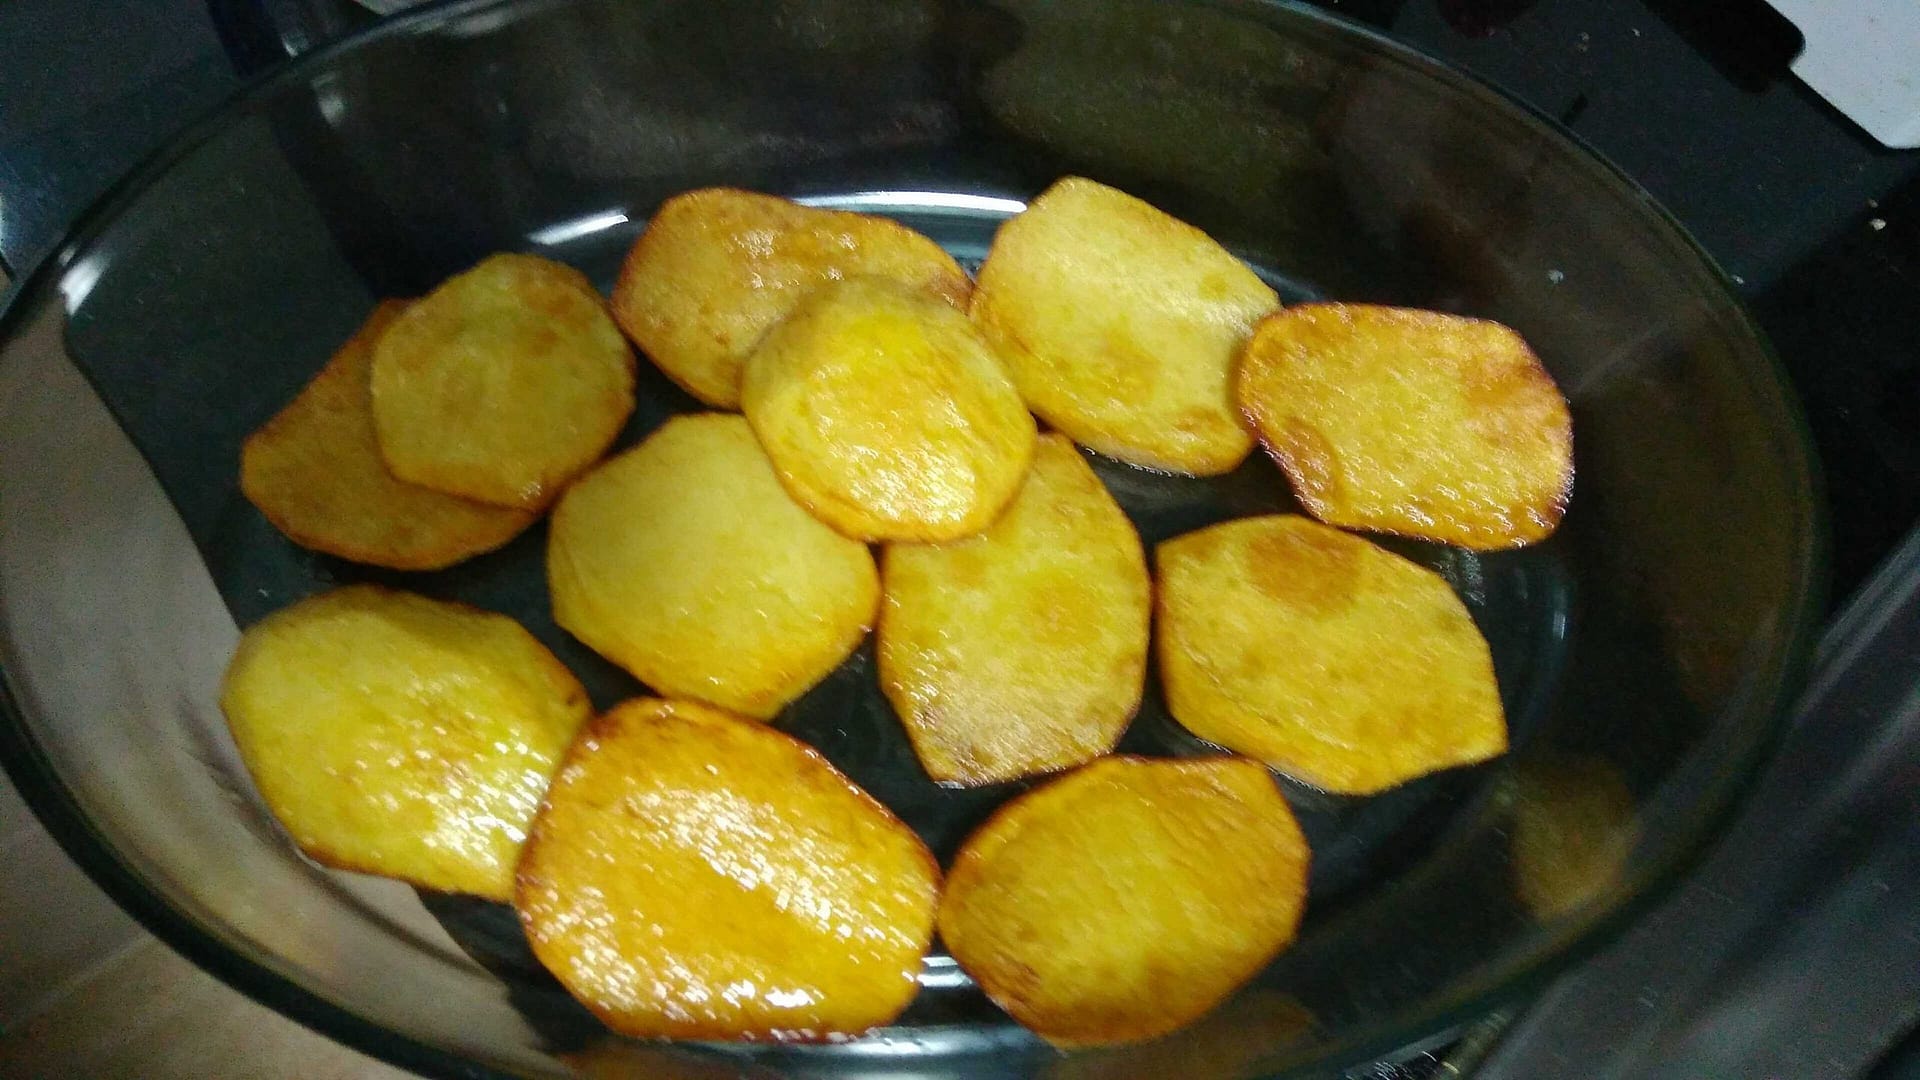 rodajas de patata fritas